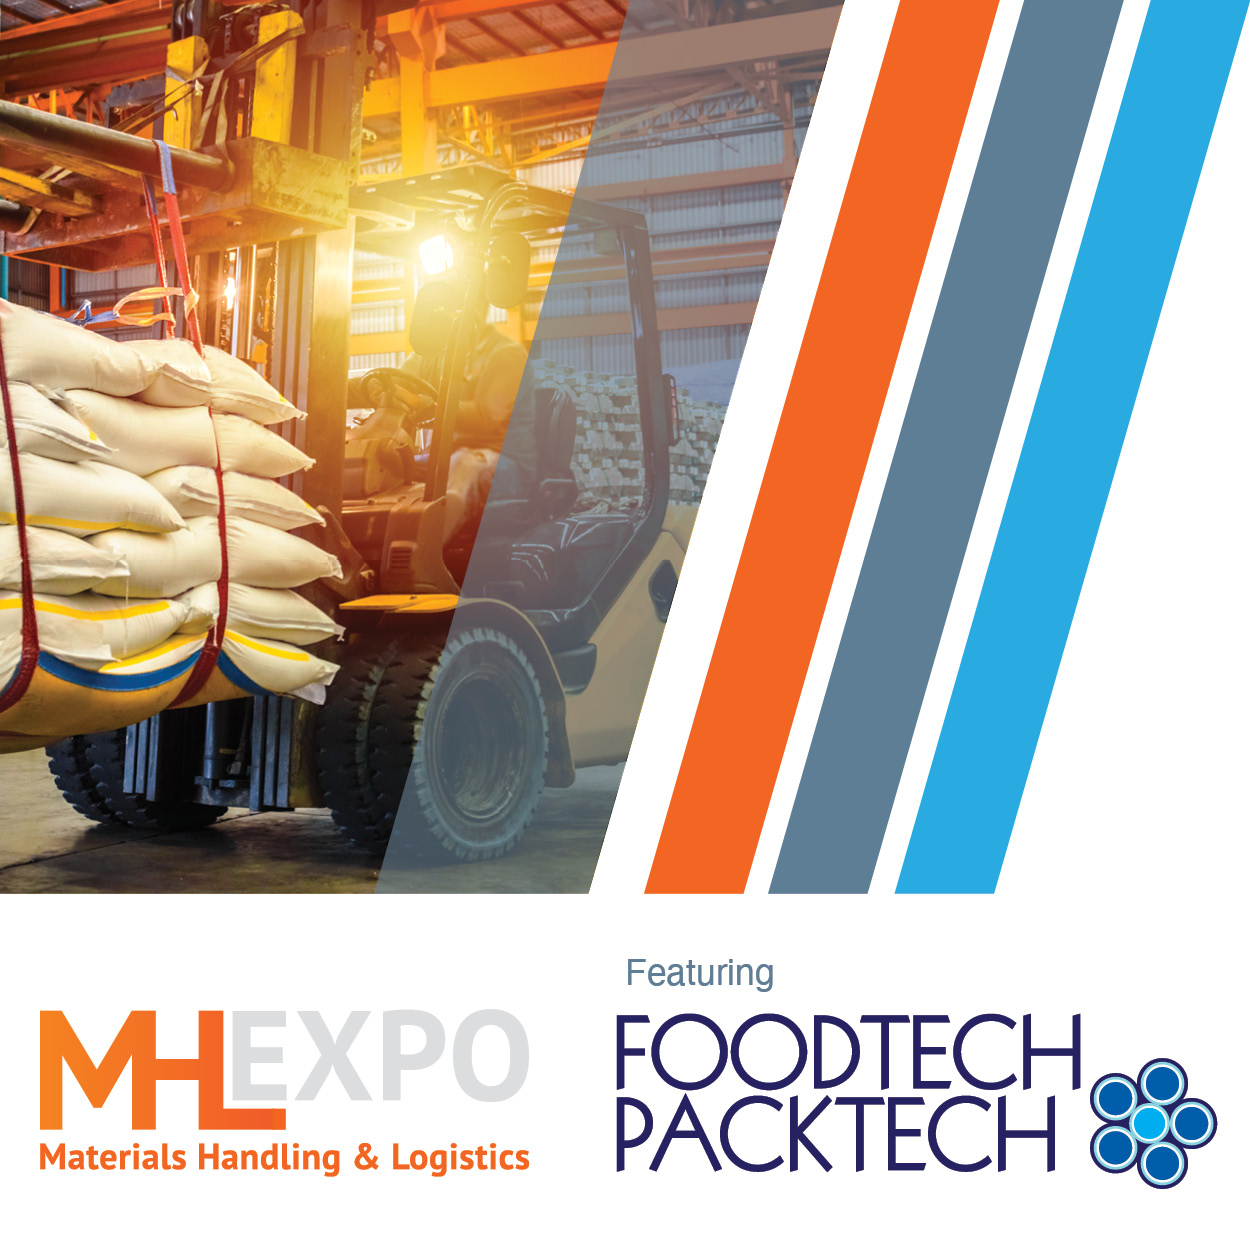 Materials Handling & Logistics Expo 2022